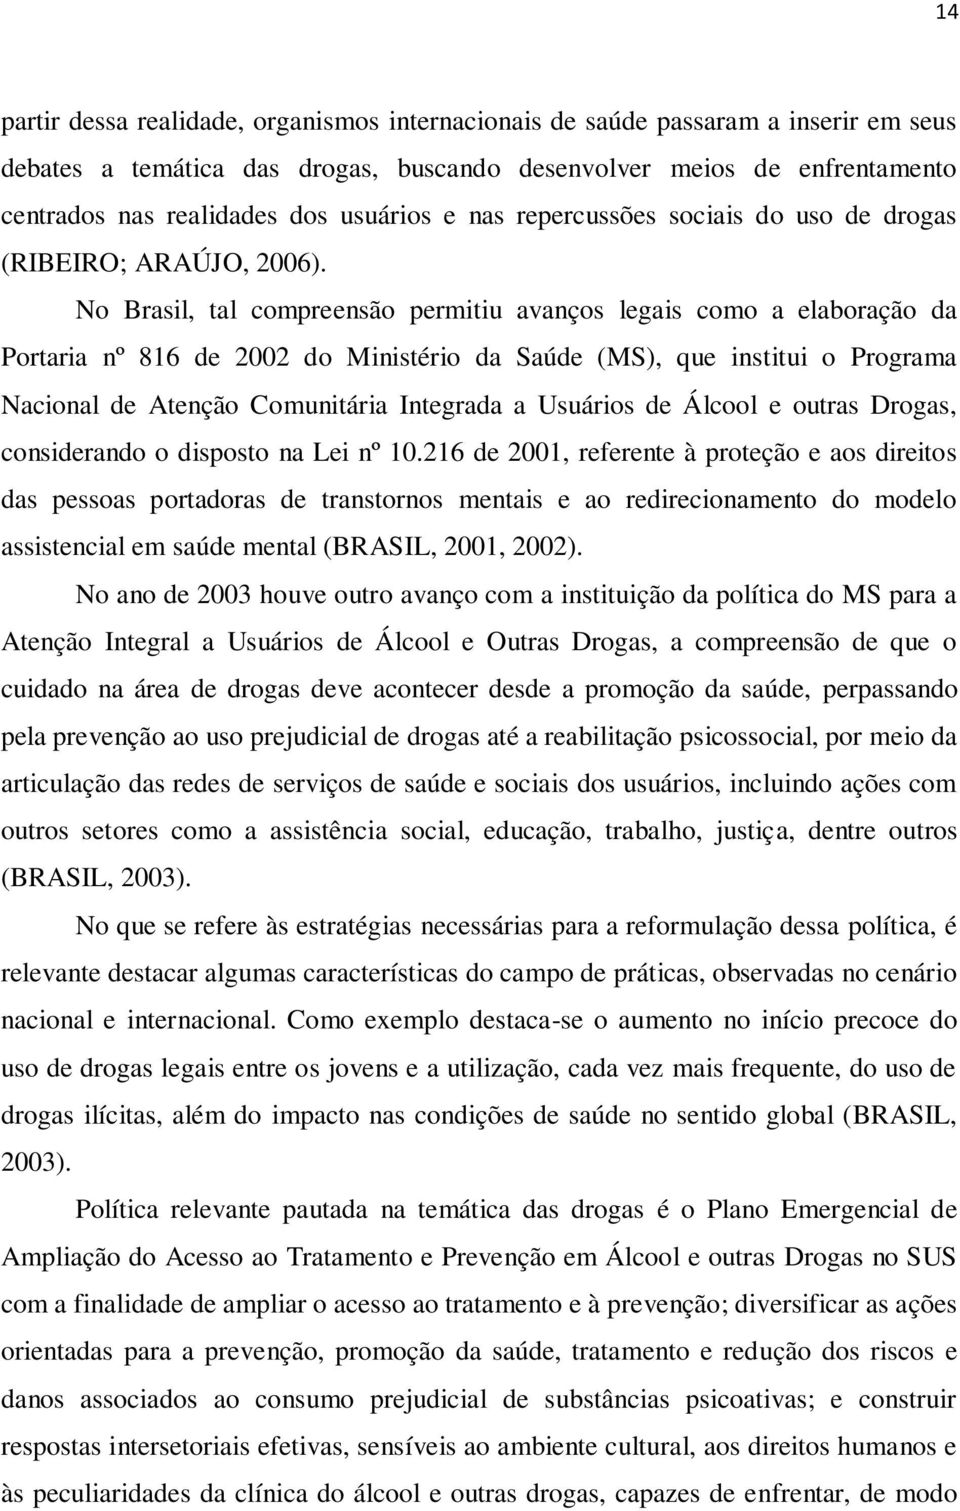 No Brasil, tal compreensão permitiu avanços legais como a elaboração da Portaria nº 816 de 2002 do Ministério da Saúde (MS), que institui o Programa Nacional de Atenção Comunitária Integrada a